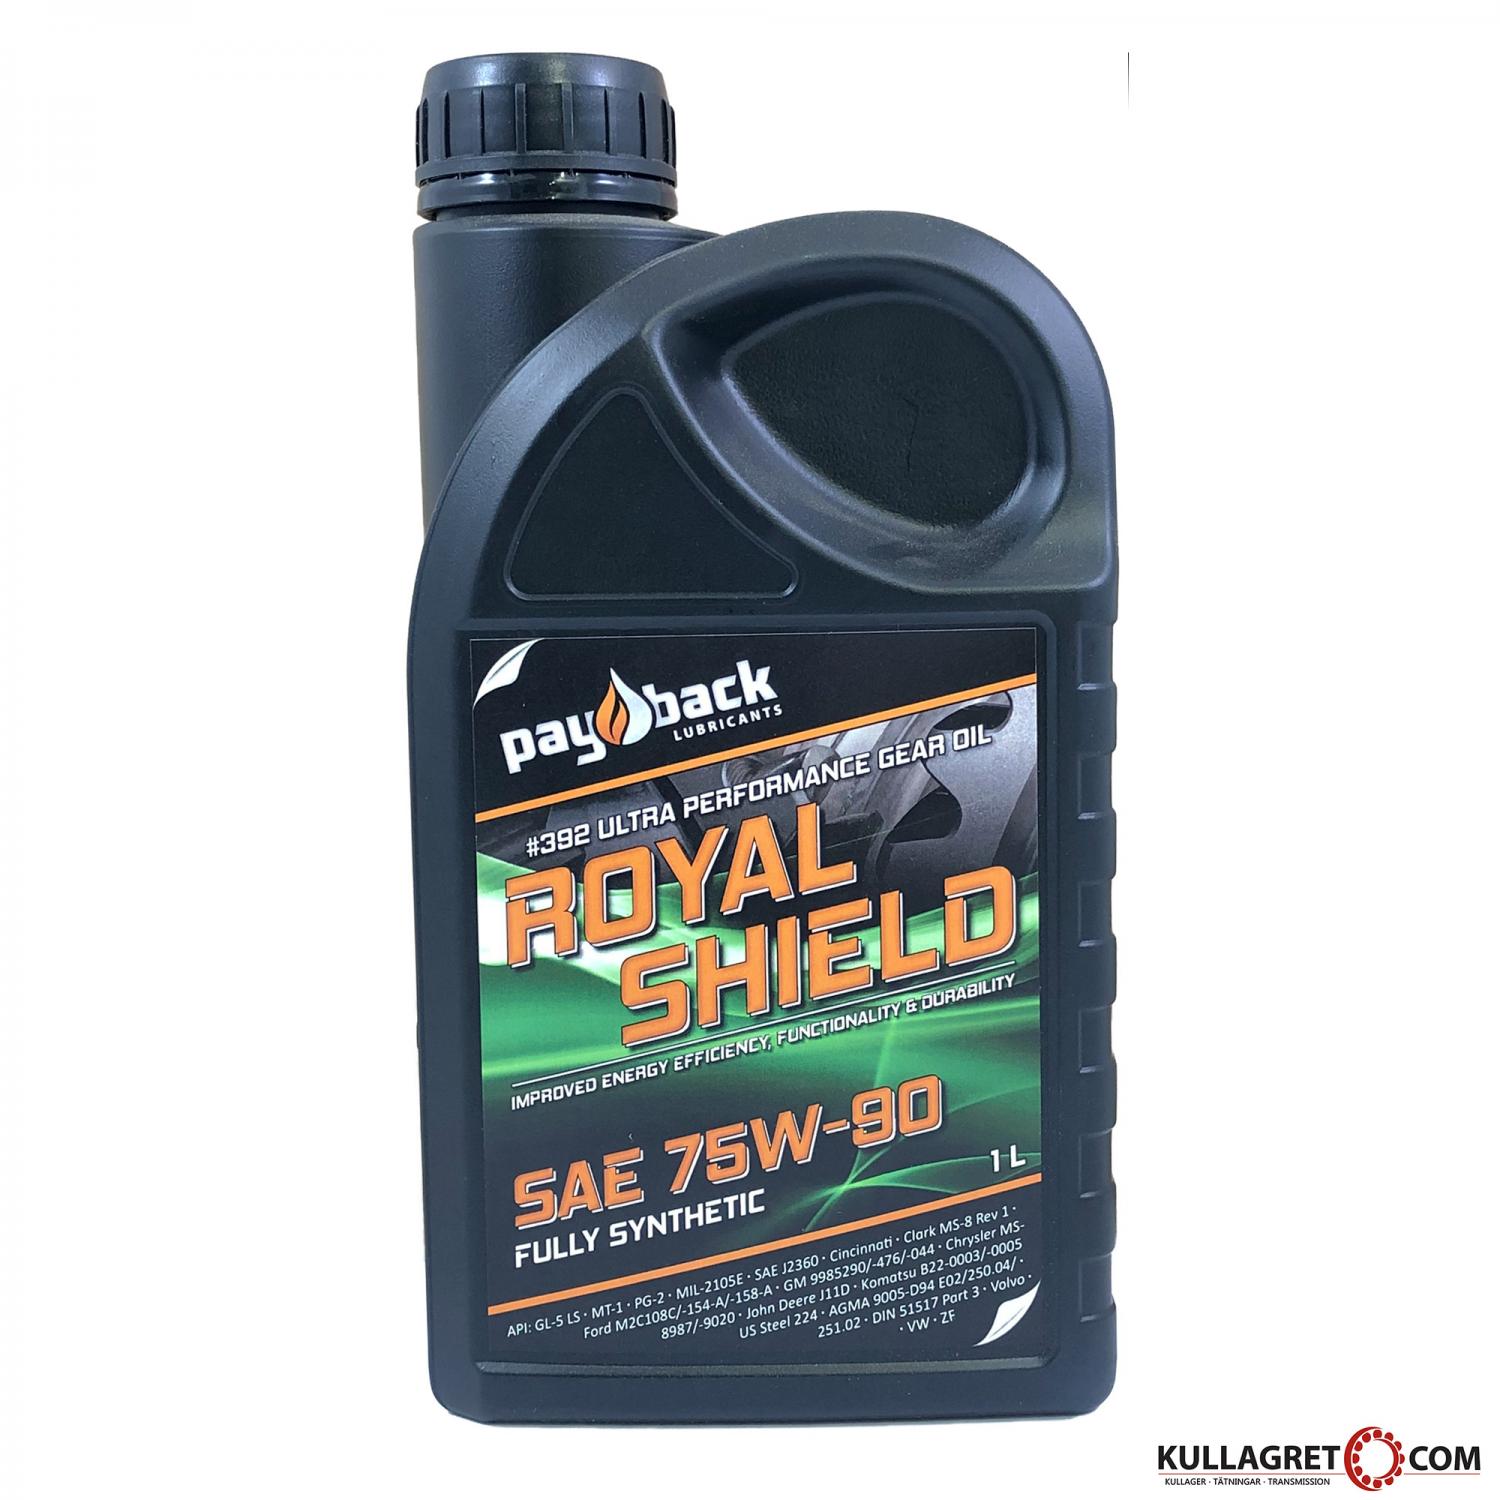 Payback #392 75w-90 Royal Shield GL-5 1L